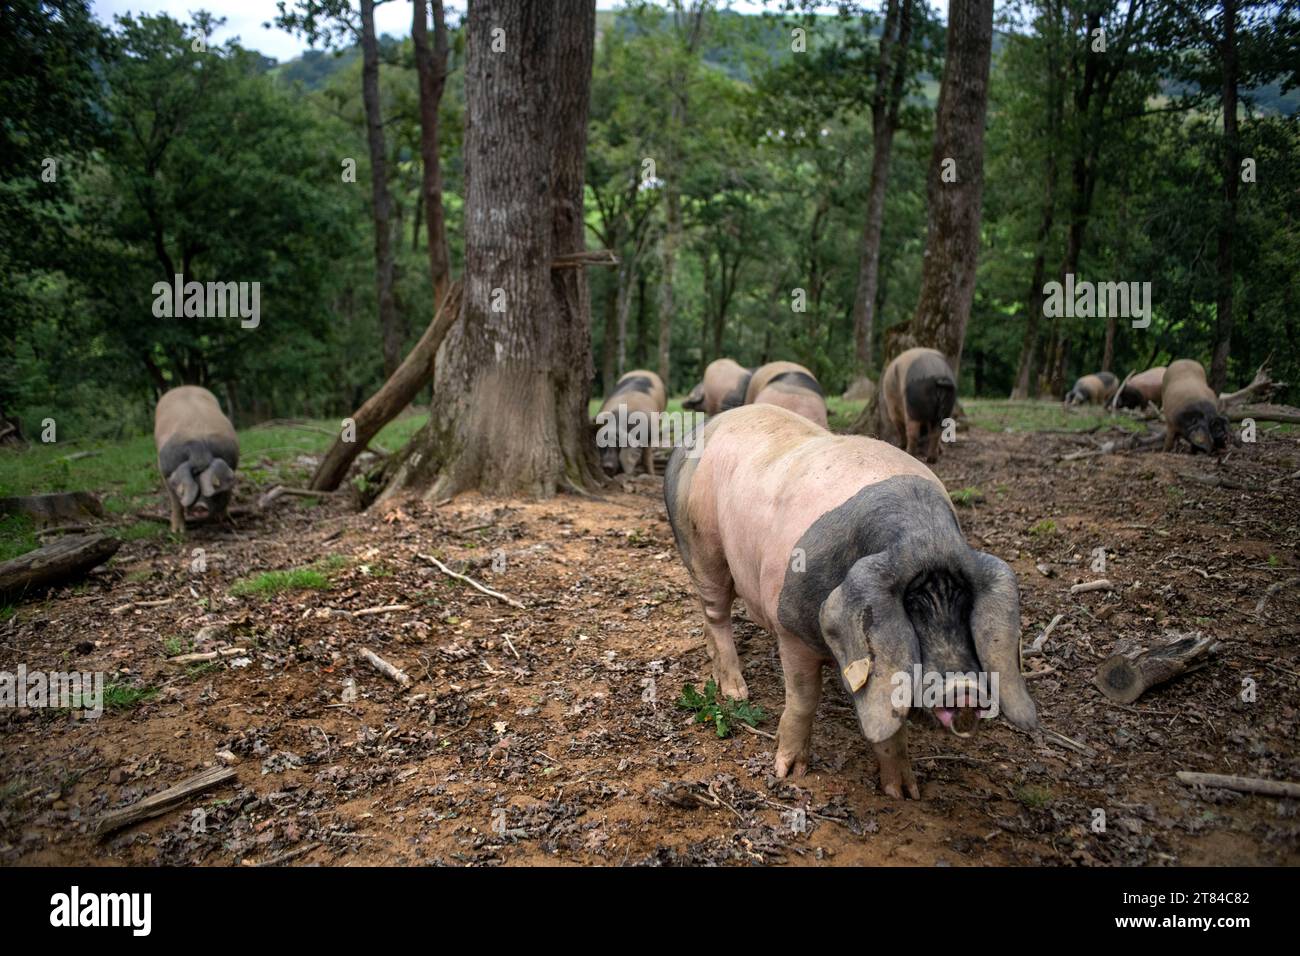 France, Pyrénées Atlantiques, pays Basque, vallée des Aldudes, Uronako Borda élevage de porcs noirs basques pour la production de jambon Kintoa AOC, joung Banque D'Images